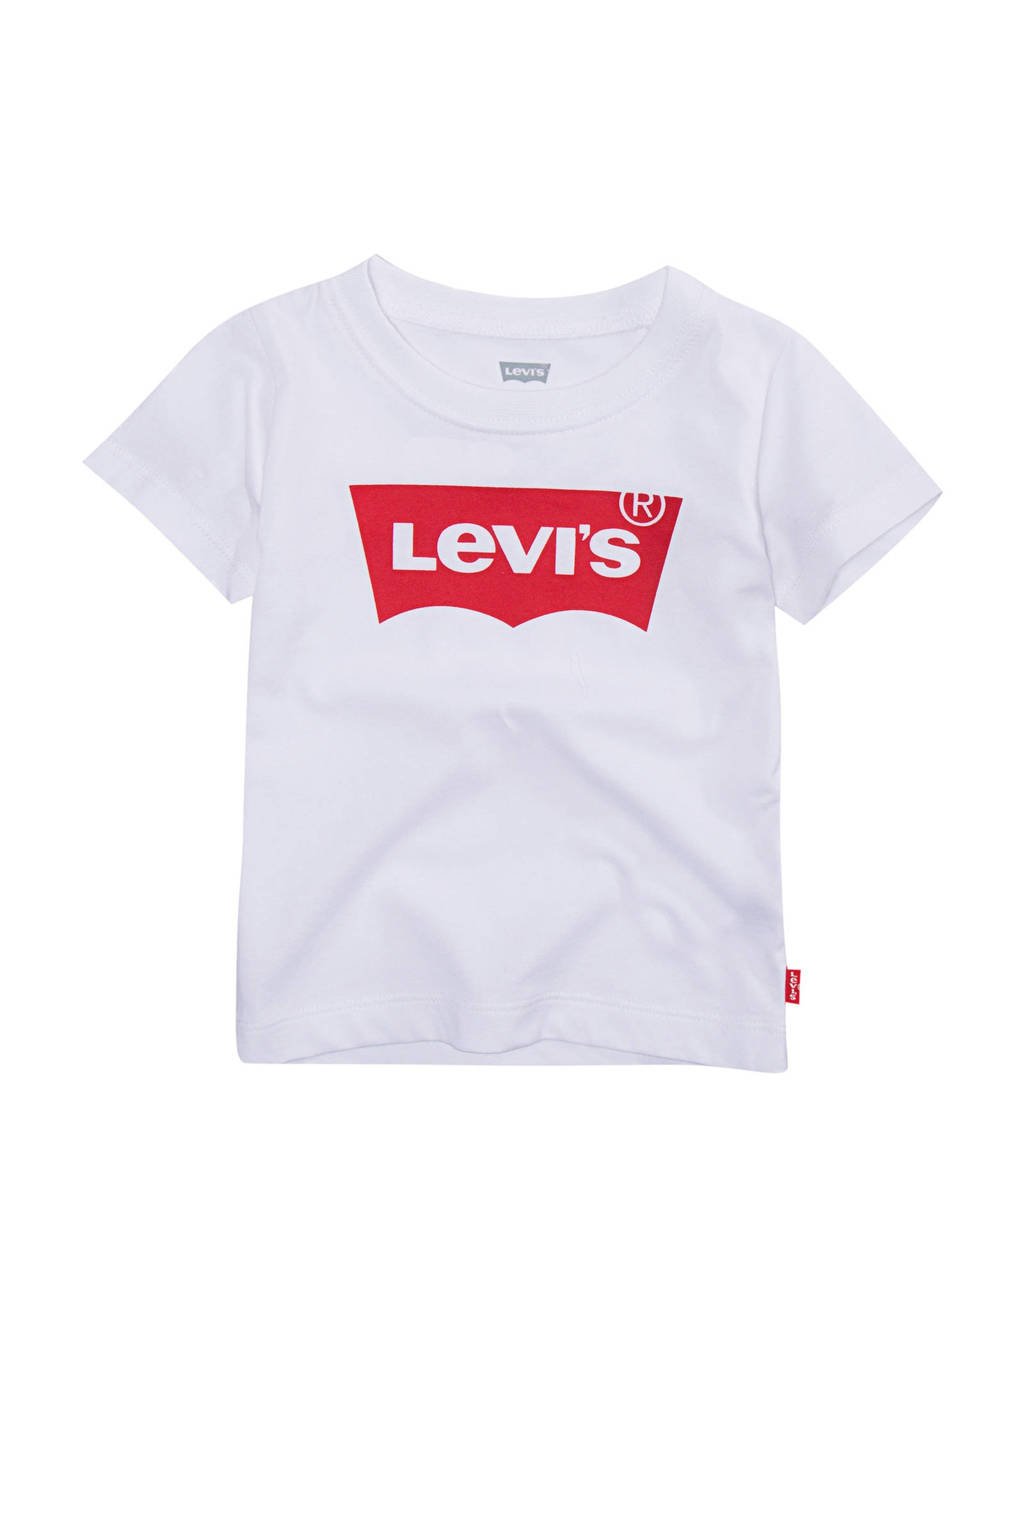 Wit en rode jongens Levi's Kids T-shirt batwing van duurzaam katoen met logo dessin, korte mouwen en ronde hals